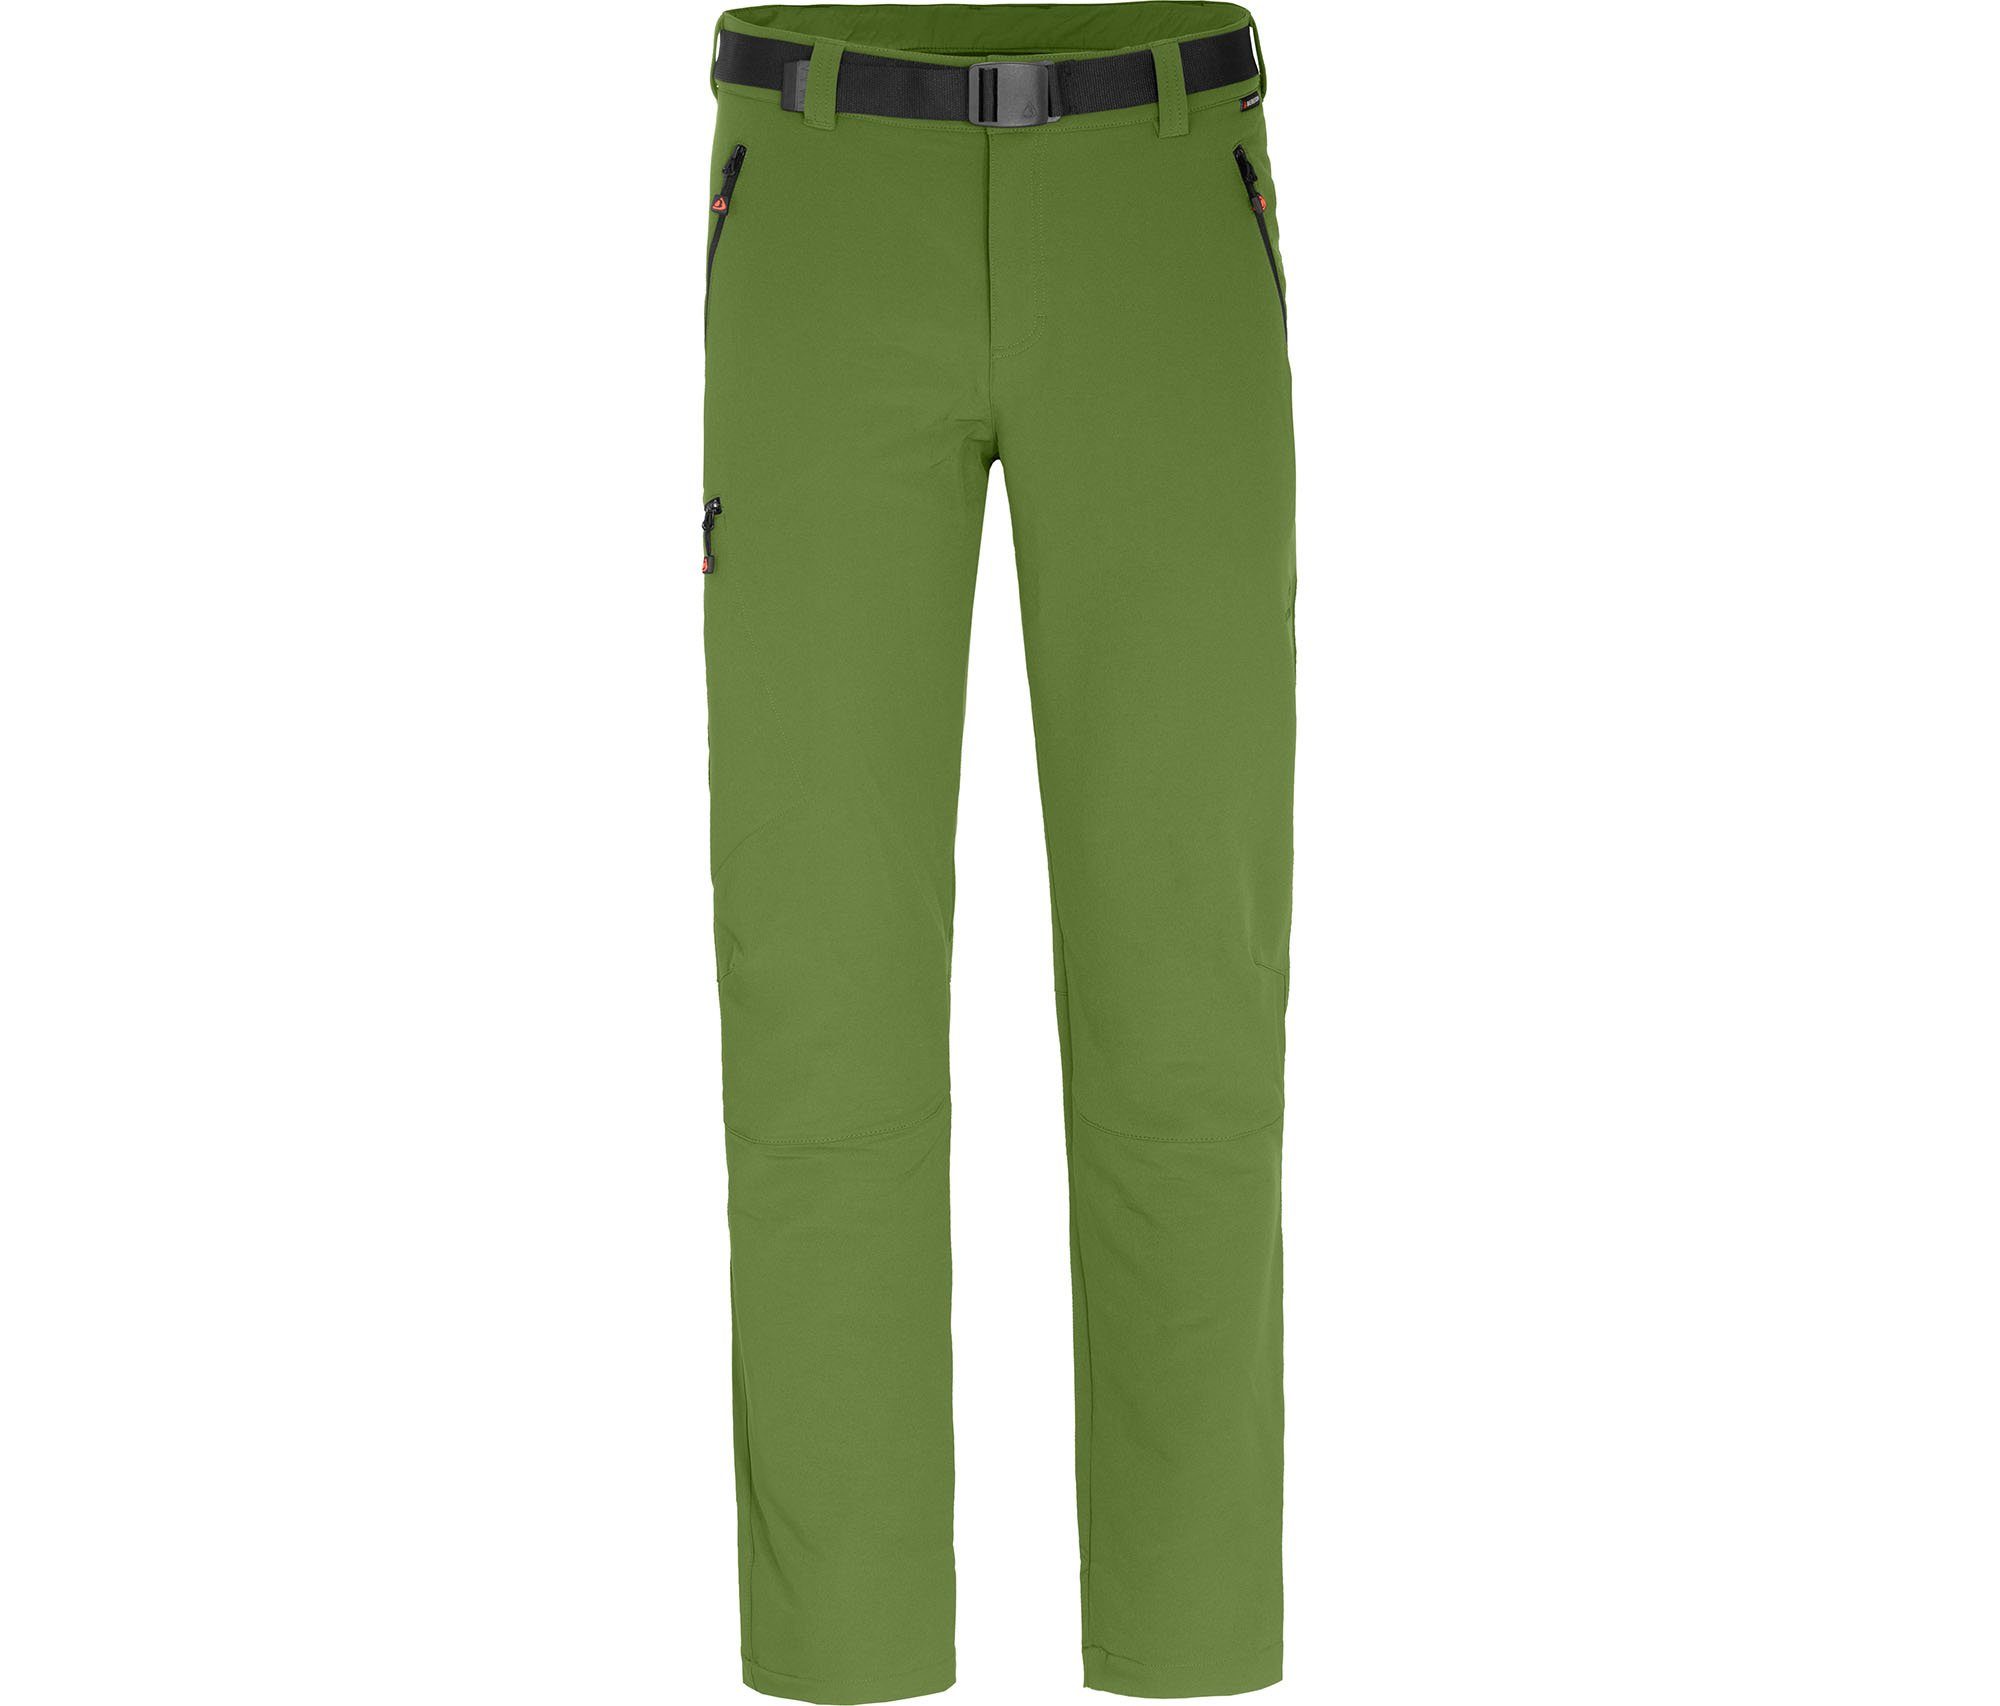 grün Polyester, Outdoorhose Herren Winter Kurzgrößen, Bergson VARBERG recyceltem aus Wanderhose,